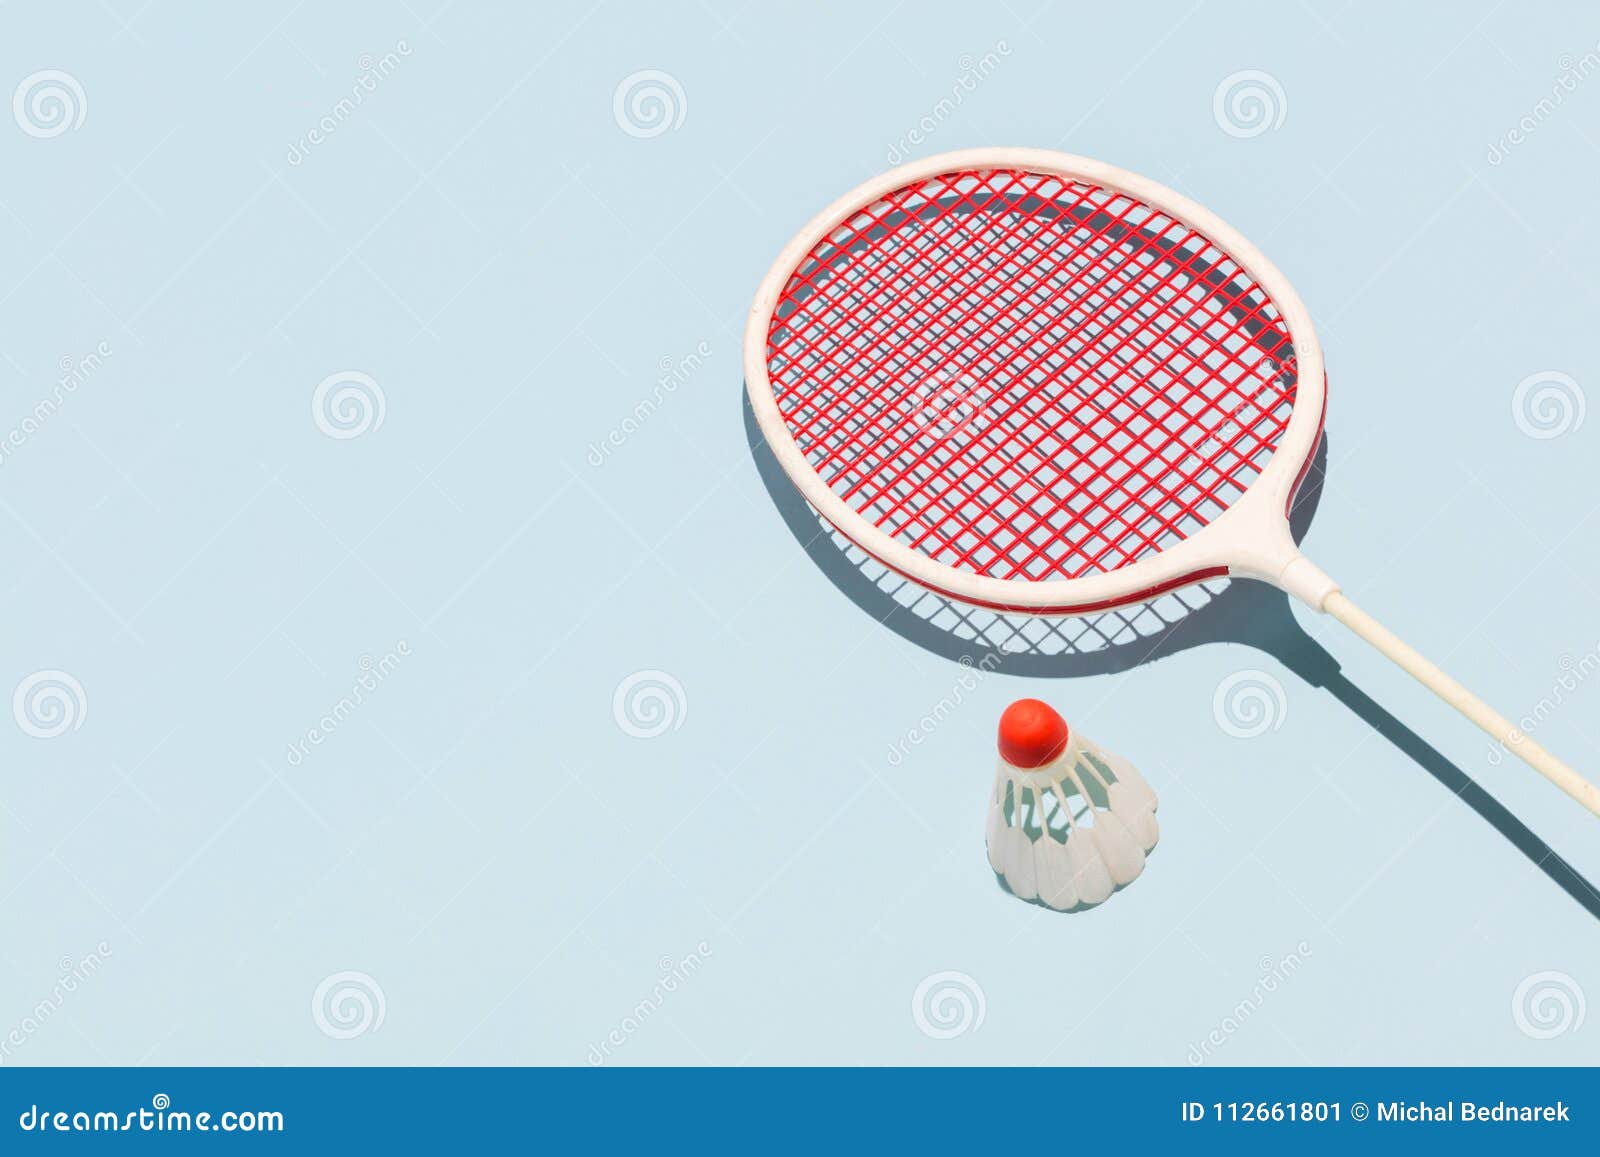 oldschool racket and birdie on blue background